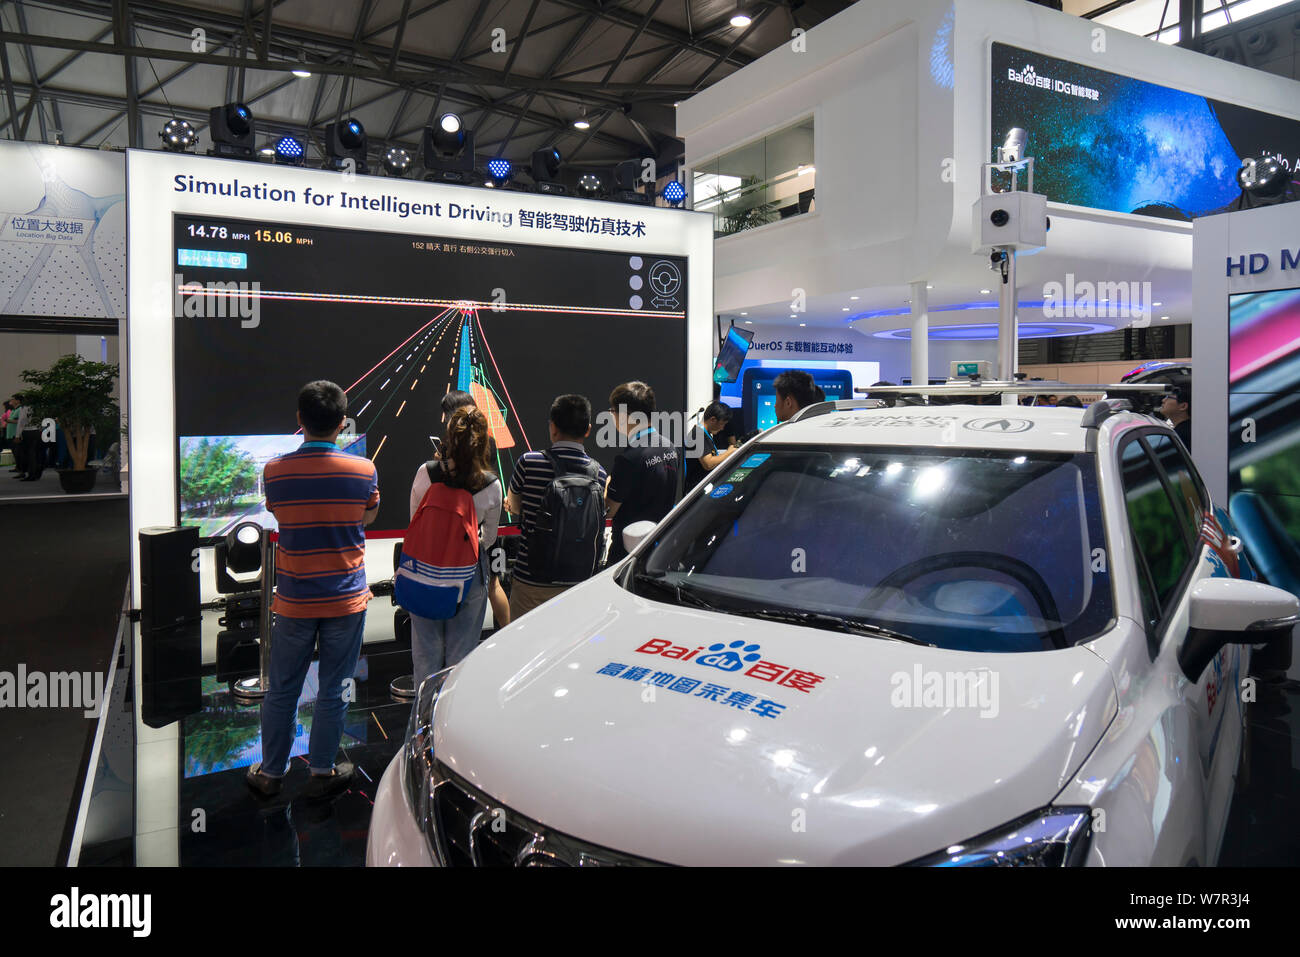 Besucher ausprobieren Simulation für intelligente fahren am Stand von Baidu während der 2017 International Consumer Electronics Show CES Asien Asien (2017) Stockfoto